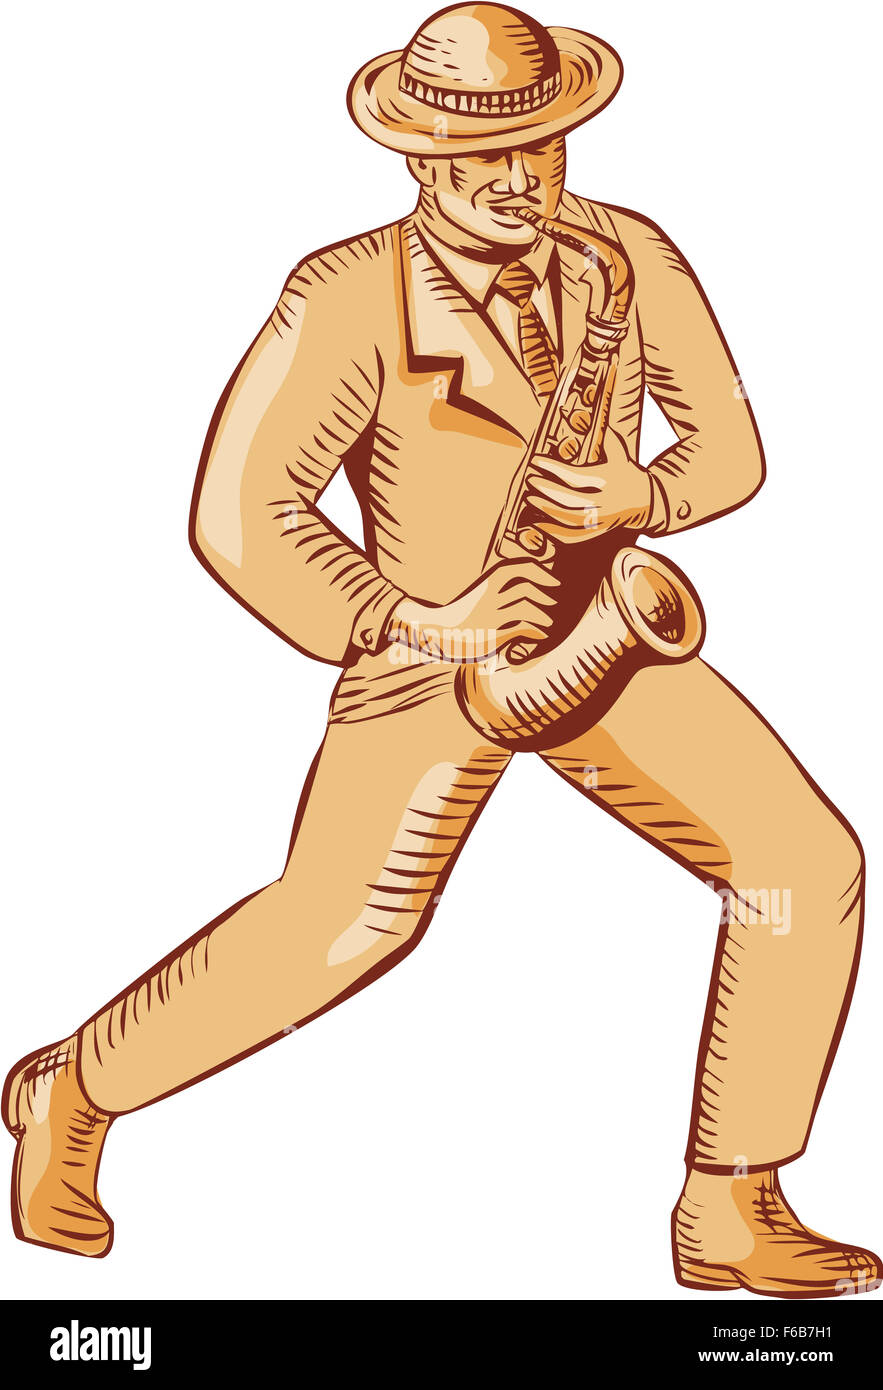 Gravure Gravure illustration style fait main d'un joueur de jazz afro-américain portant chapeau melon musicien jouant du saxophone, vu de l'avant ensemble sur fond isolé Banque D'Images